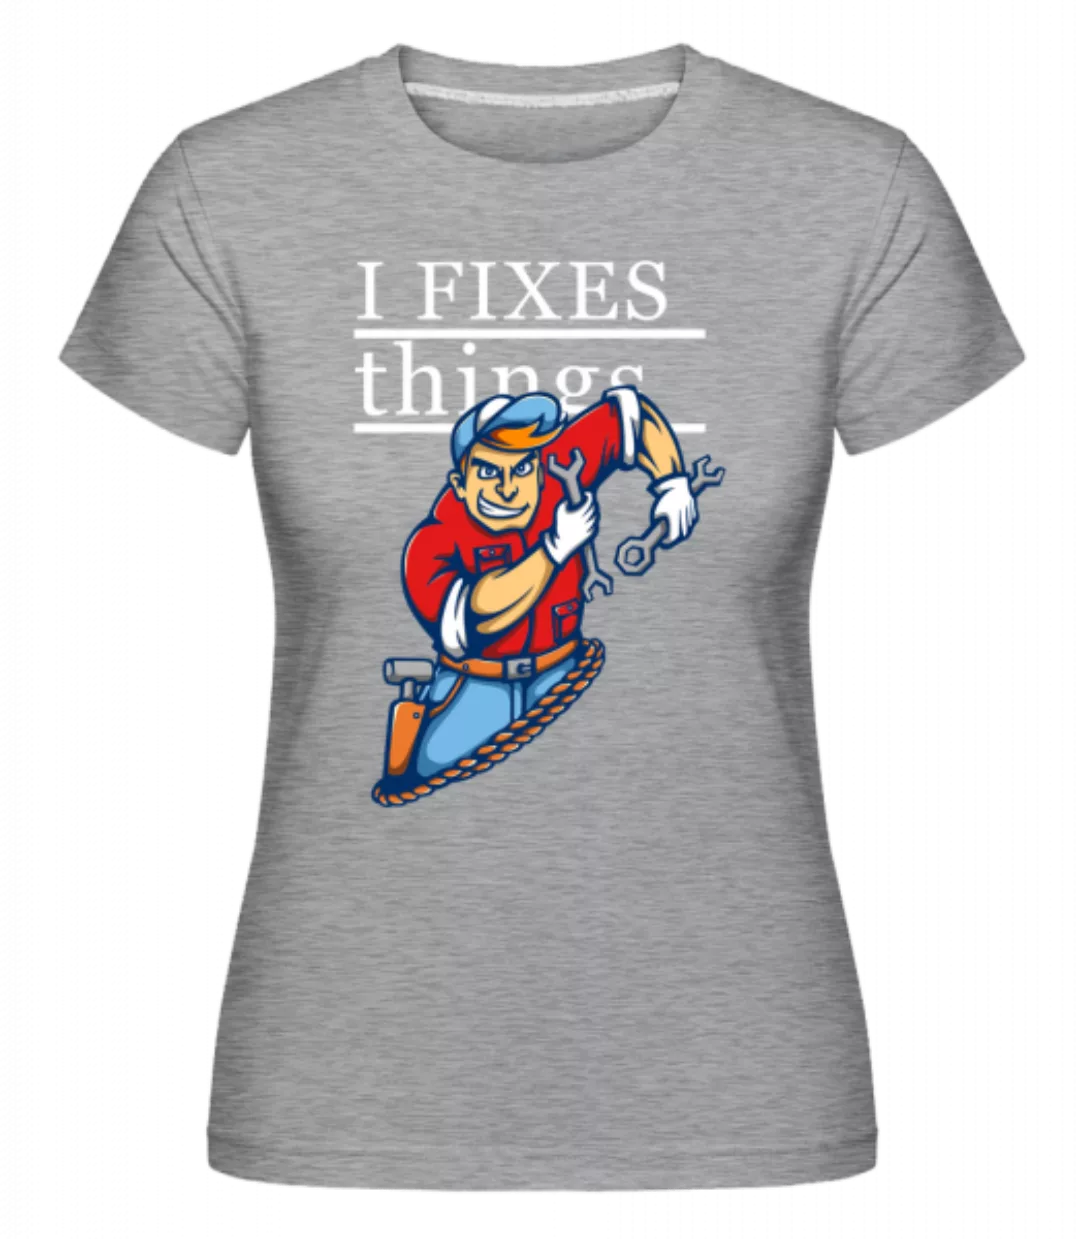 I Fixes Things · Shirtinator Frauen T-Shirt günstig online kaufen